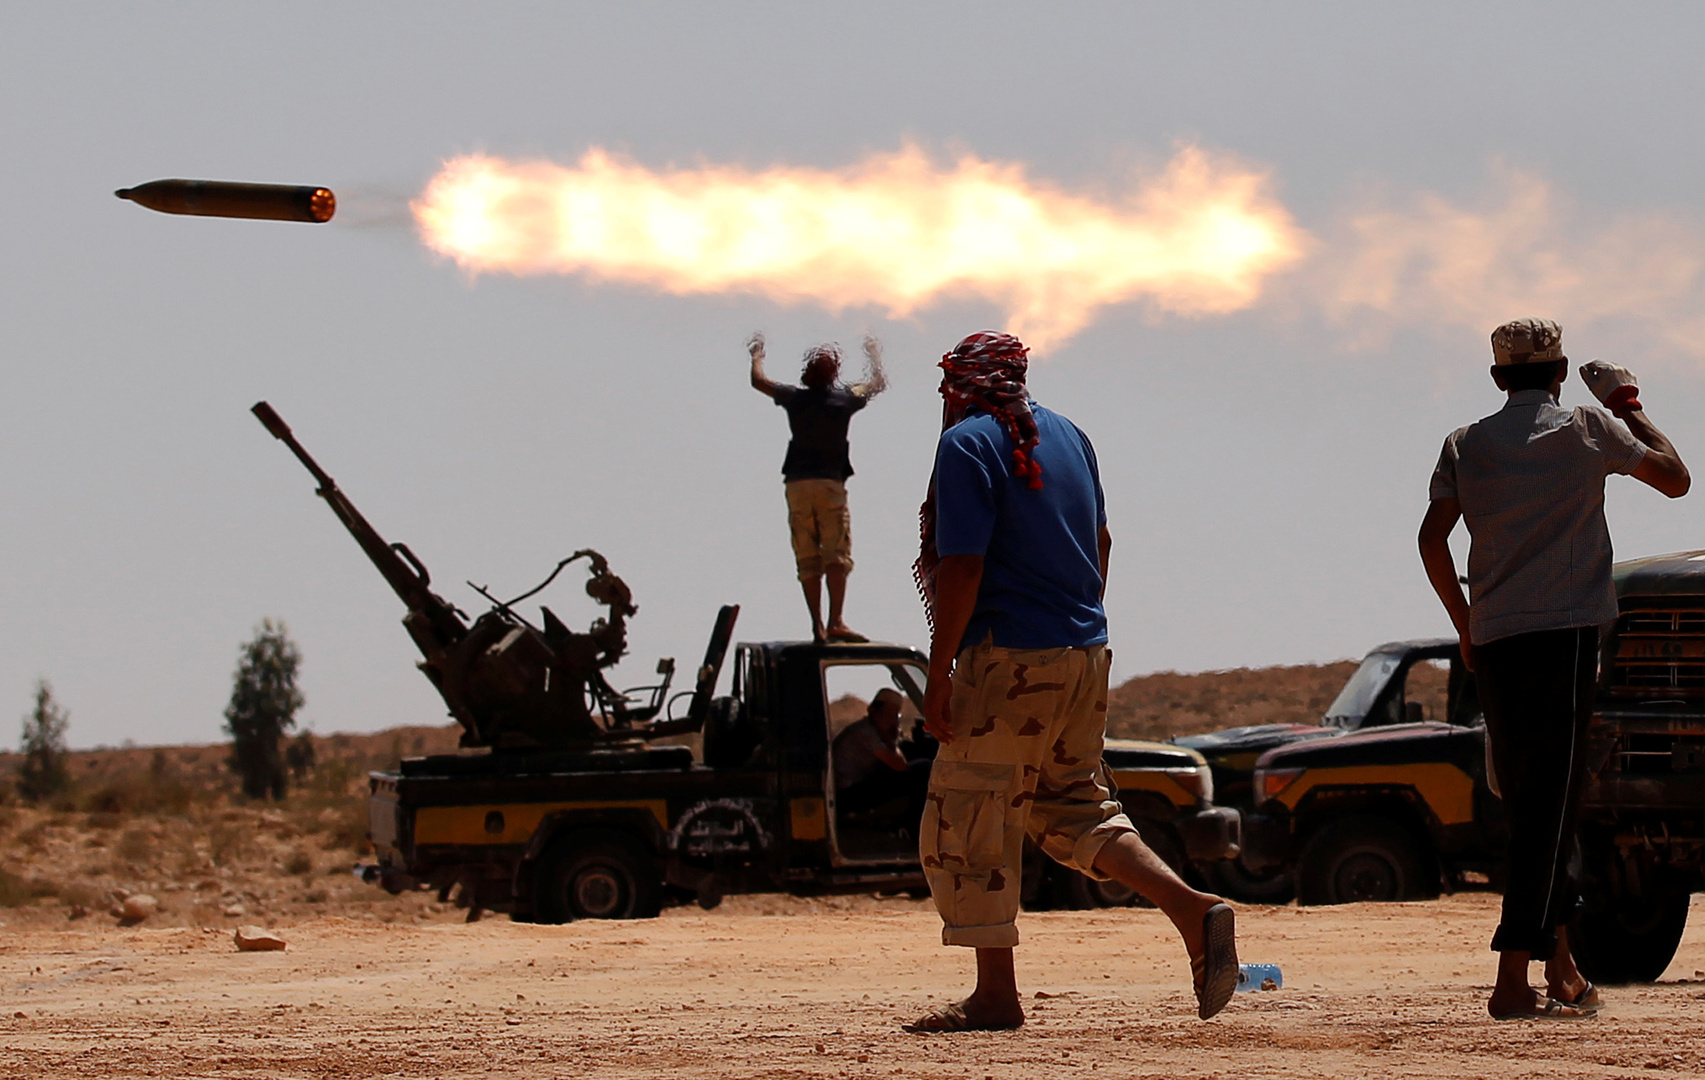 مصدر دبلوماسي أمريكي يكشف خفايا الموقف الأمريكي من الصراع في ليبيا